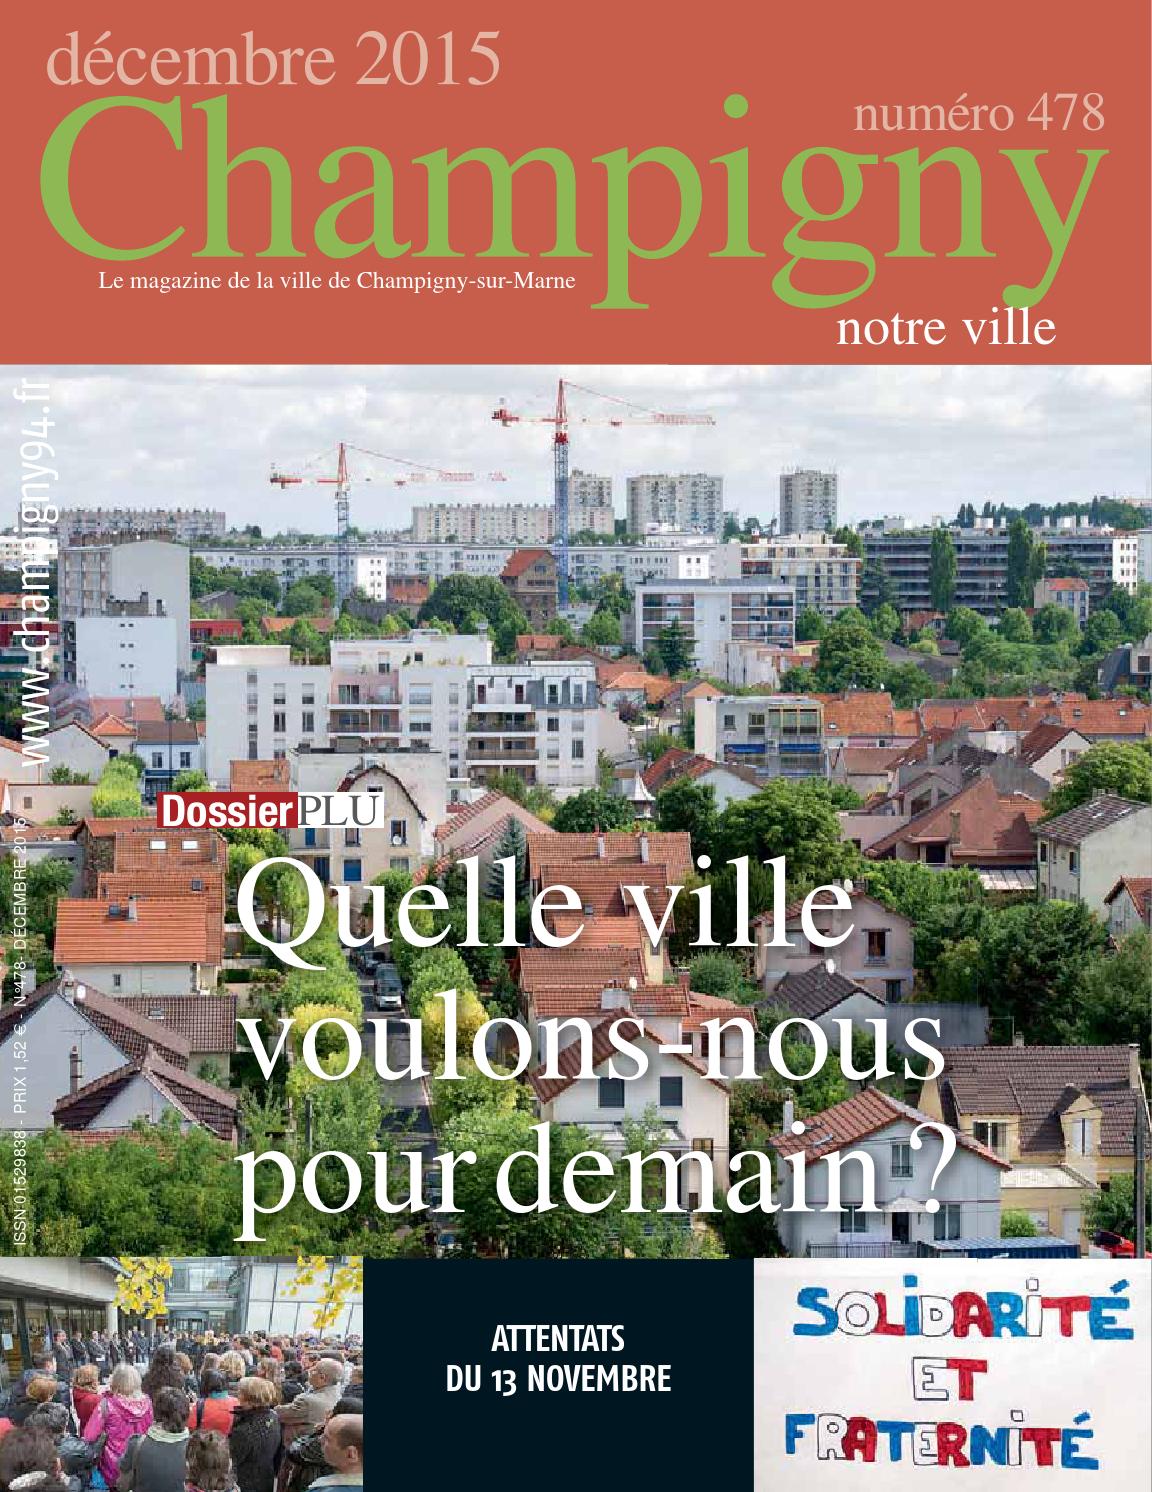 Centre Leclerc Le Plus Proche Frais Champigny Notre Ville N° 478 Décembre 2015 by N R issuu